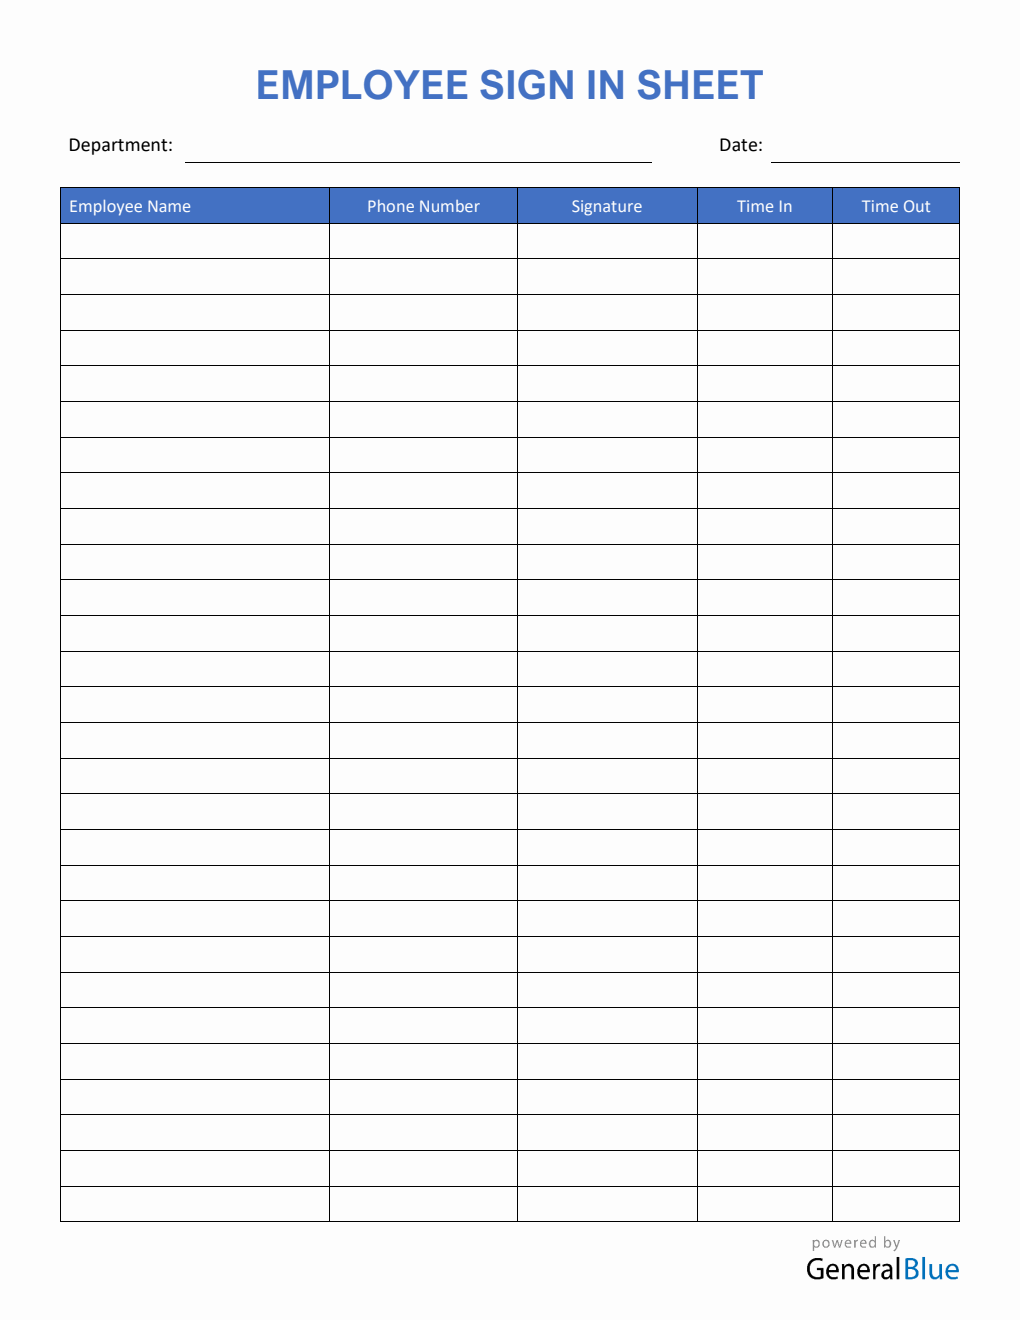 Employee Sign In Sheet in PDF